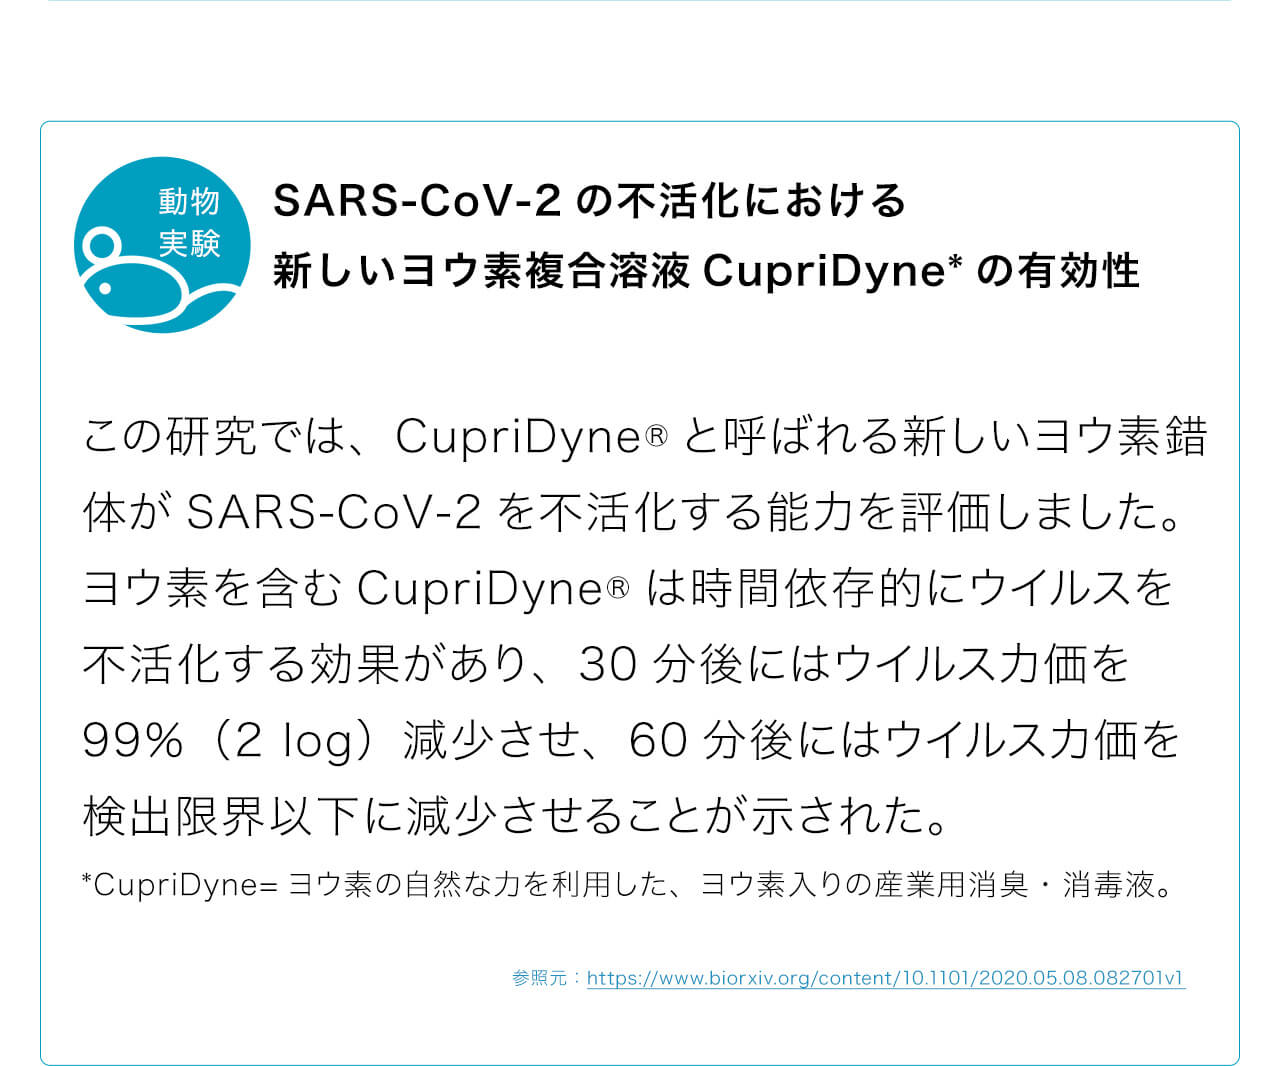 SARS-CoV-2の不活化における新しいヨウ素複合溶液CupriDyne*の有効性。この研究では、CupriDyne®と呼ばれる新しいヨウ素錯体がSARS-CoV-2を不活化する能力を評価しました。ヨウ素を含むCupriDyne®は時間依存的にウイルスを不活化する効果があり、30分後にはウイルス力価を99％（2 log）減少させ、60分後にはウイルス力価を検出限界以下に減少させることが示された